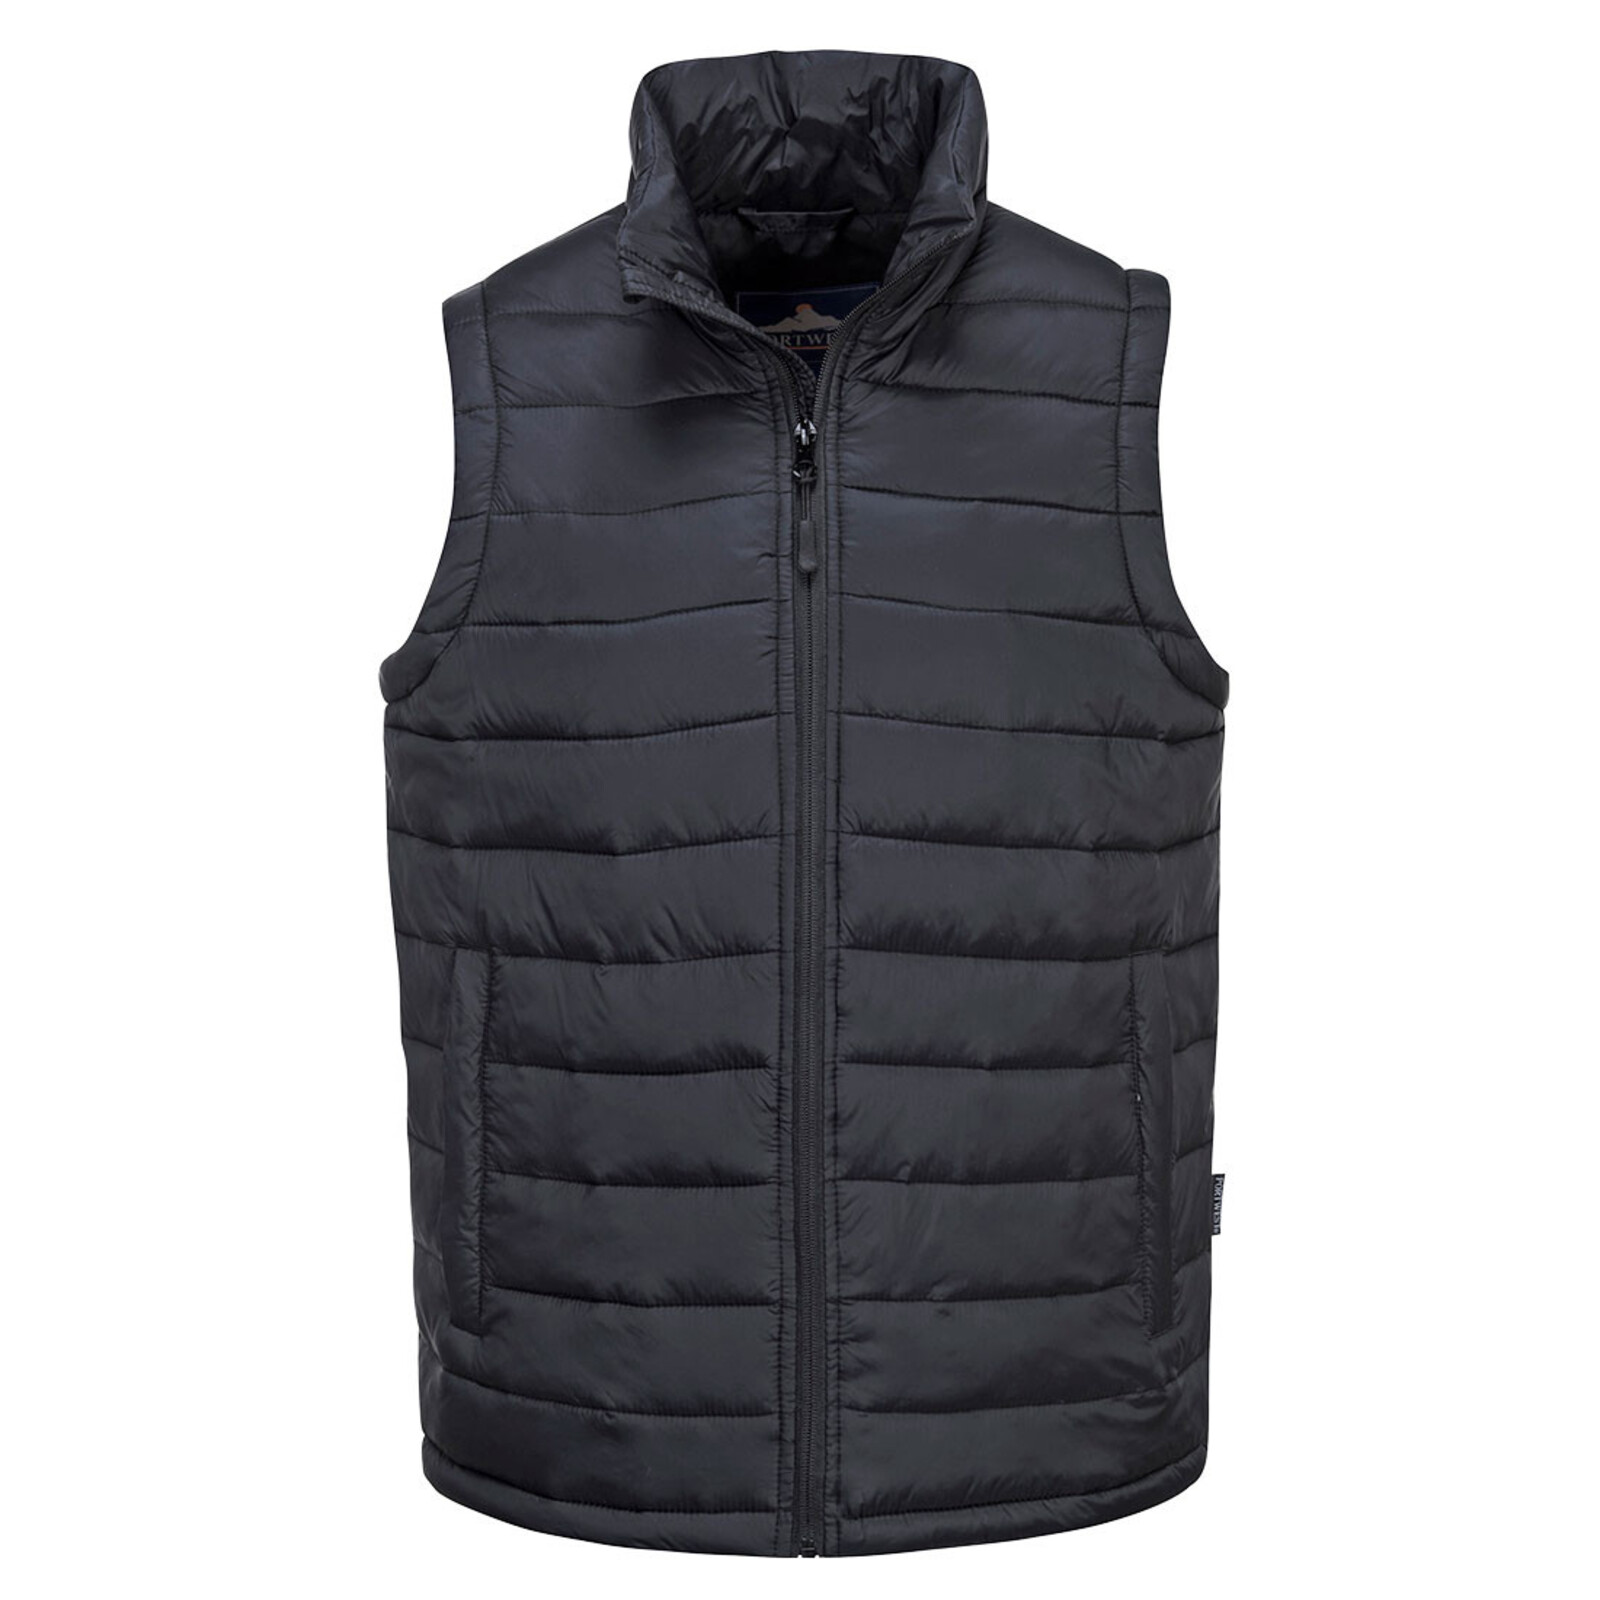 Pánska zateplená termo vesta Portwest Aspen S544 - veľkosť: XL, farba: čierna